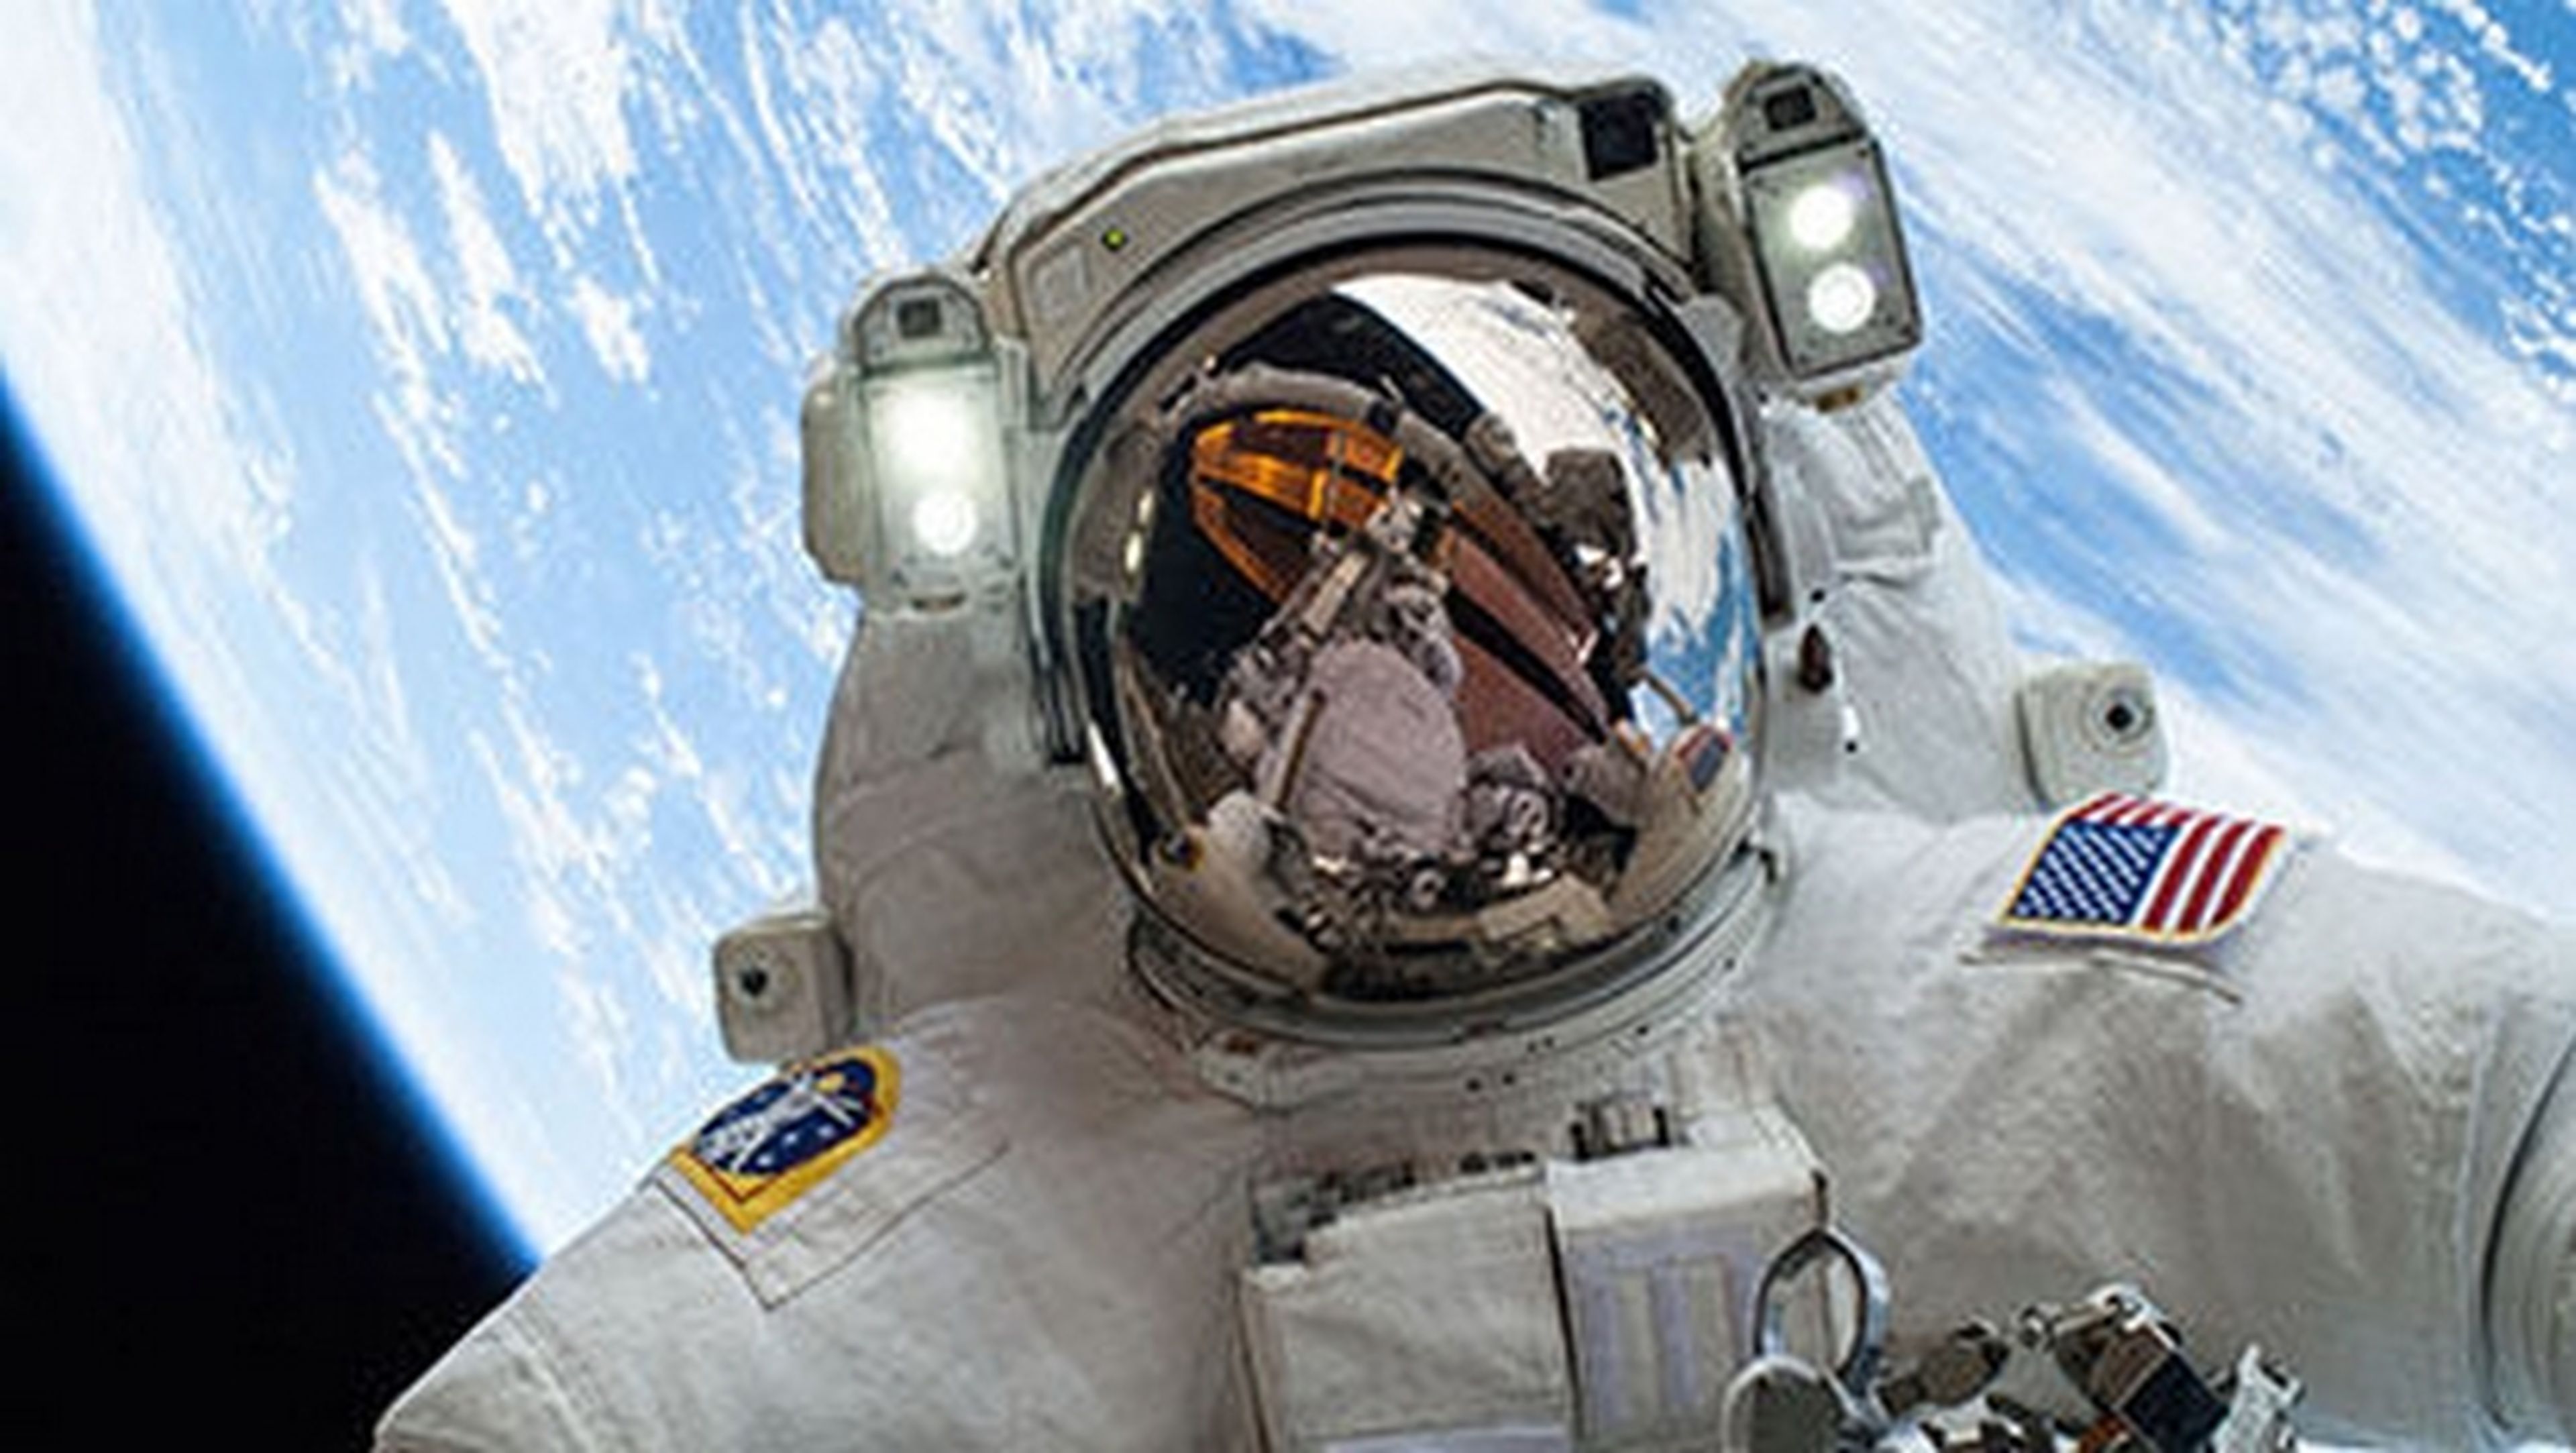 Live from Space, el primera programa que se retransmitirá en directo desde el espacio, en la Estación Espacial Internacional